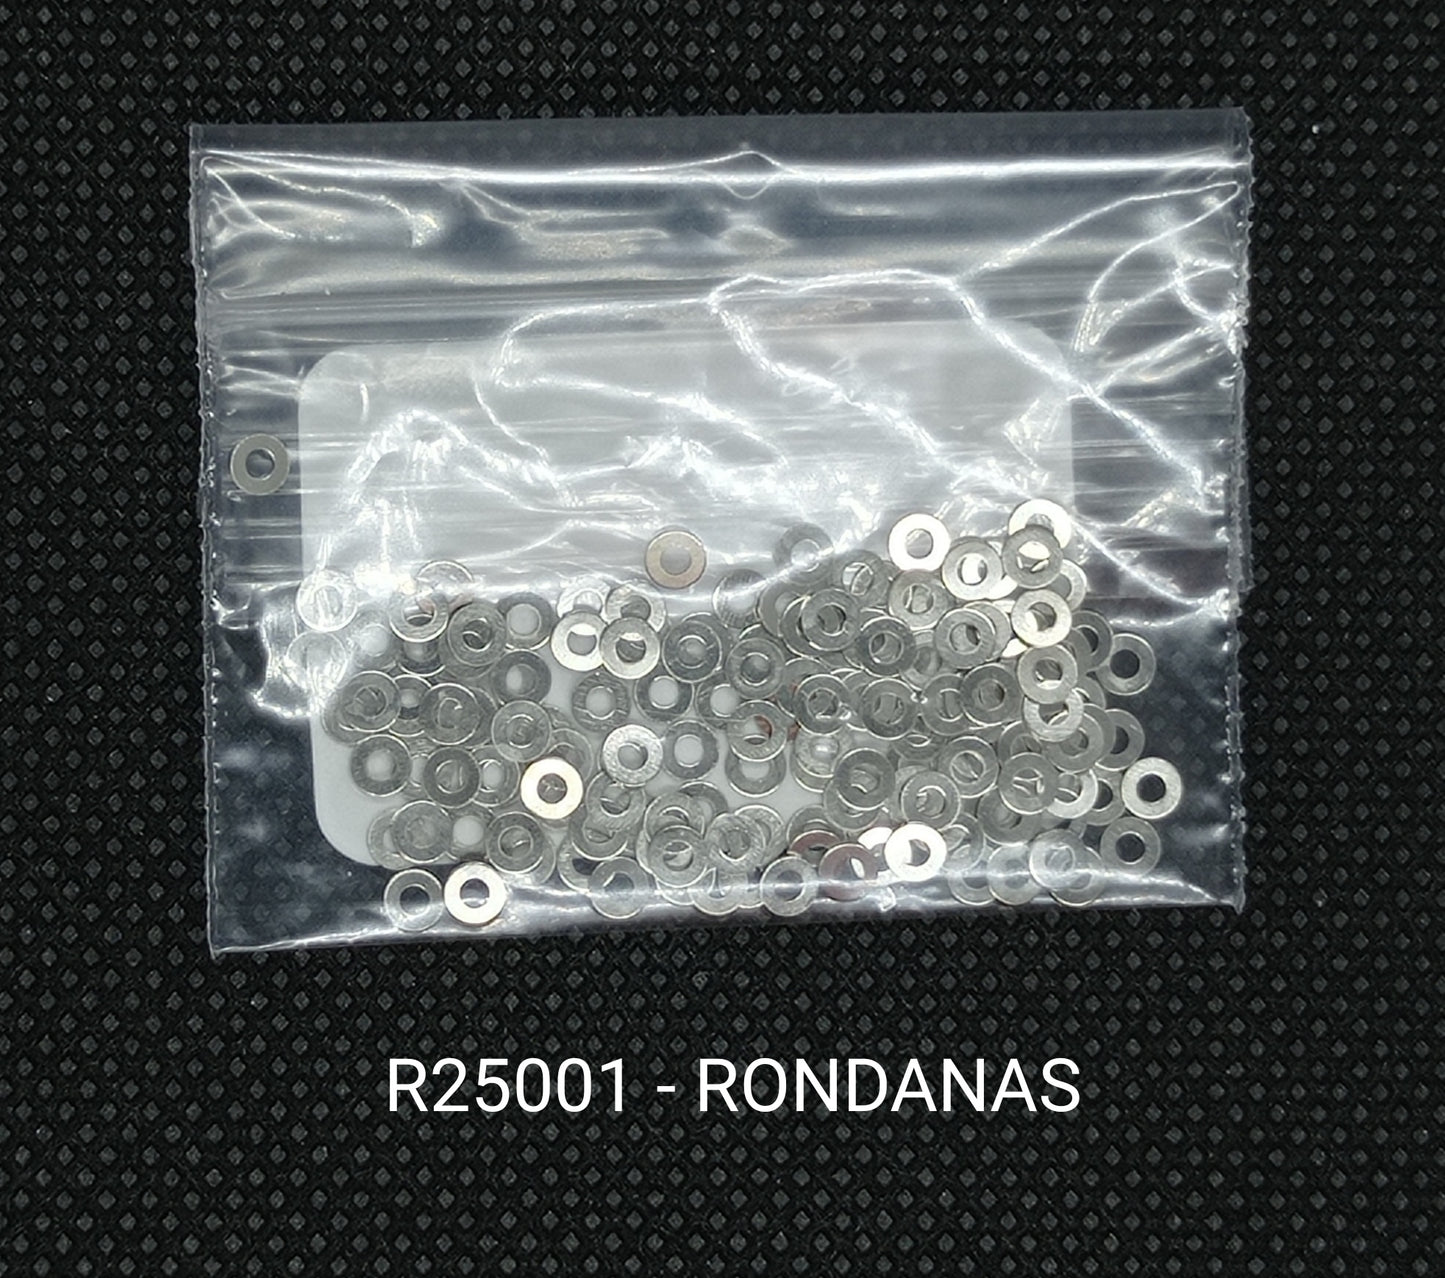 R25001 - RONDANAS PARA ARMAZON